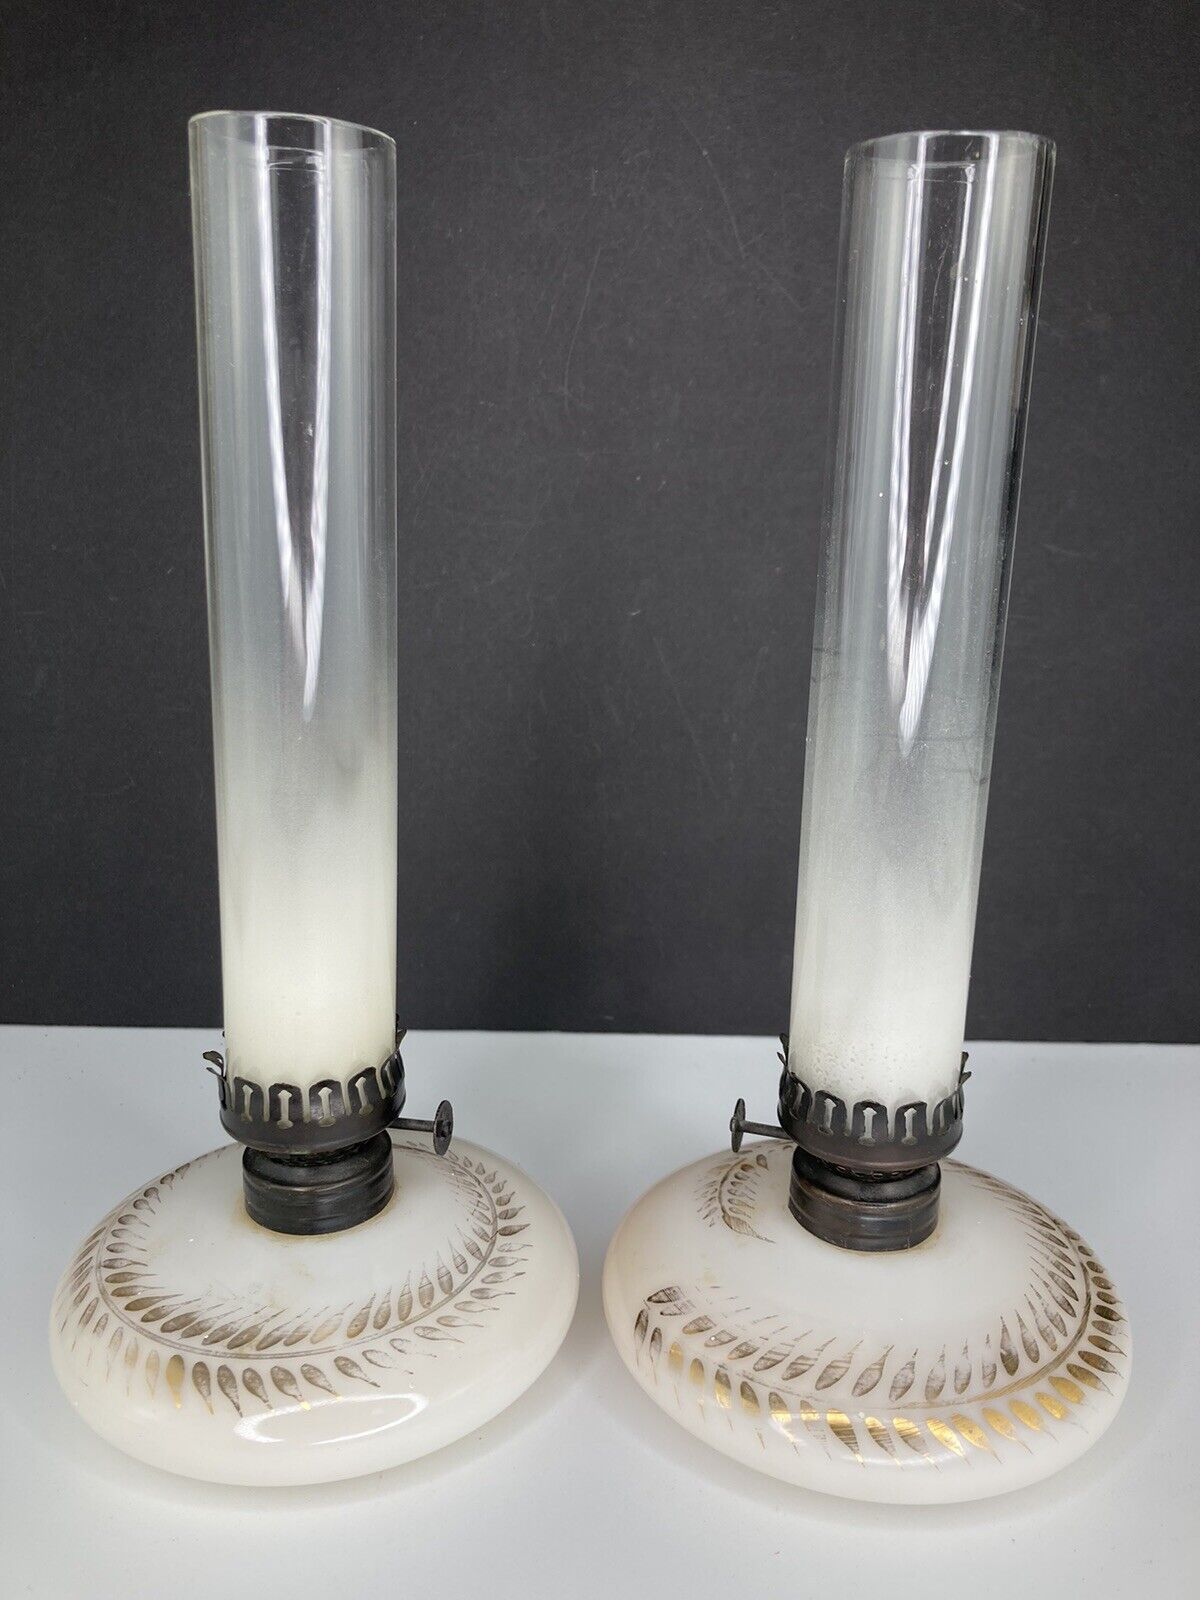 Antique Pair of Kerosene Lamps ~ Flat Hand Lamp, Hornet Burner, Wheat Pattern